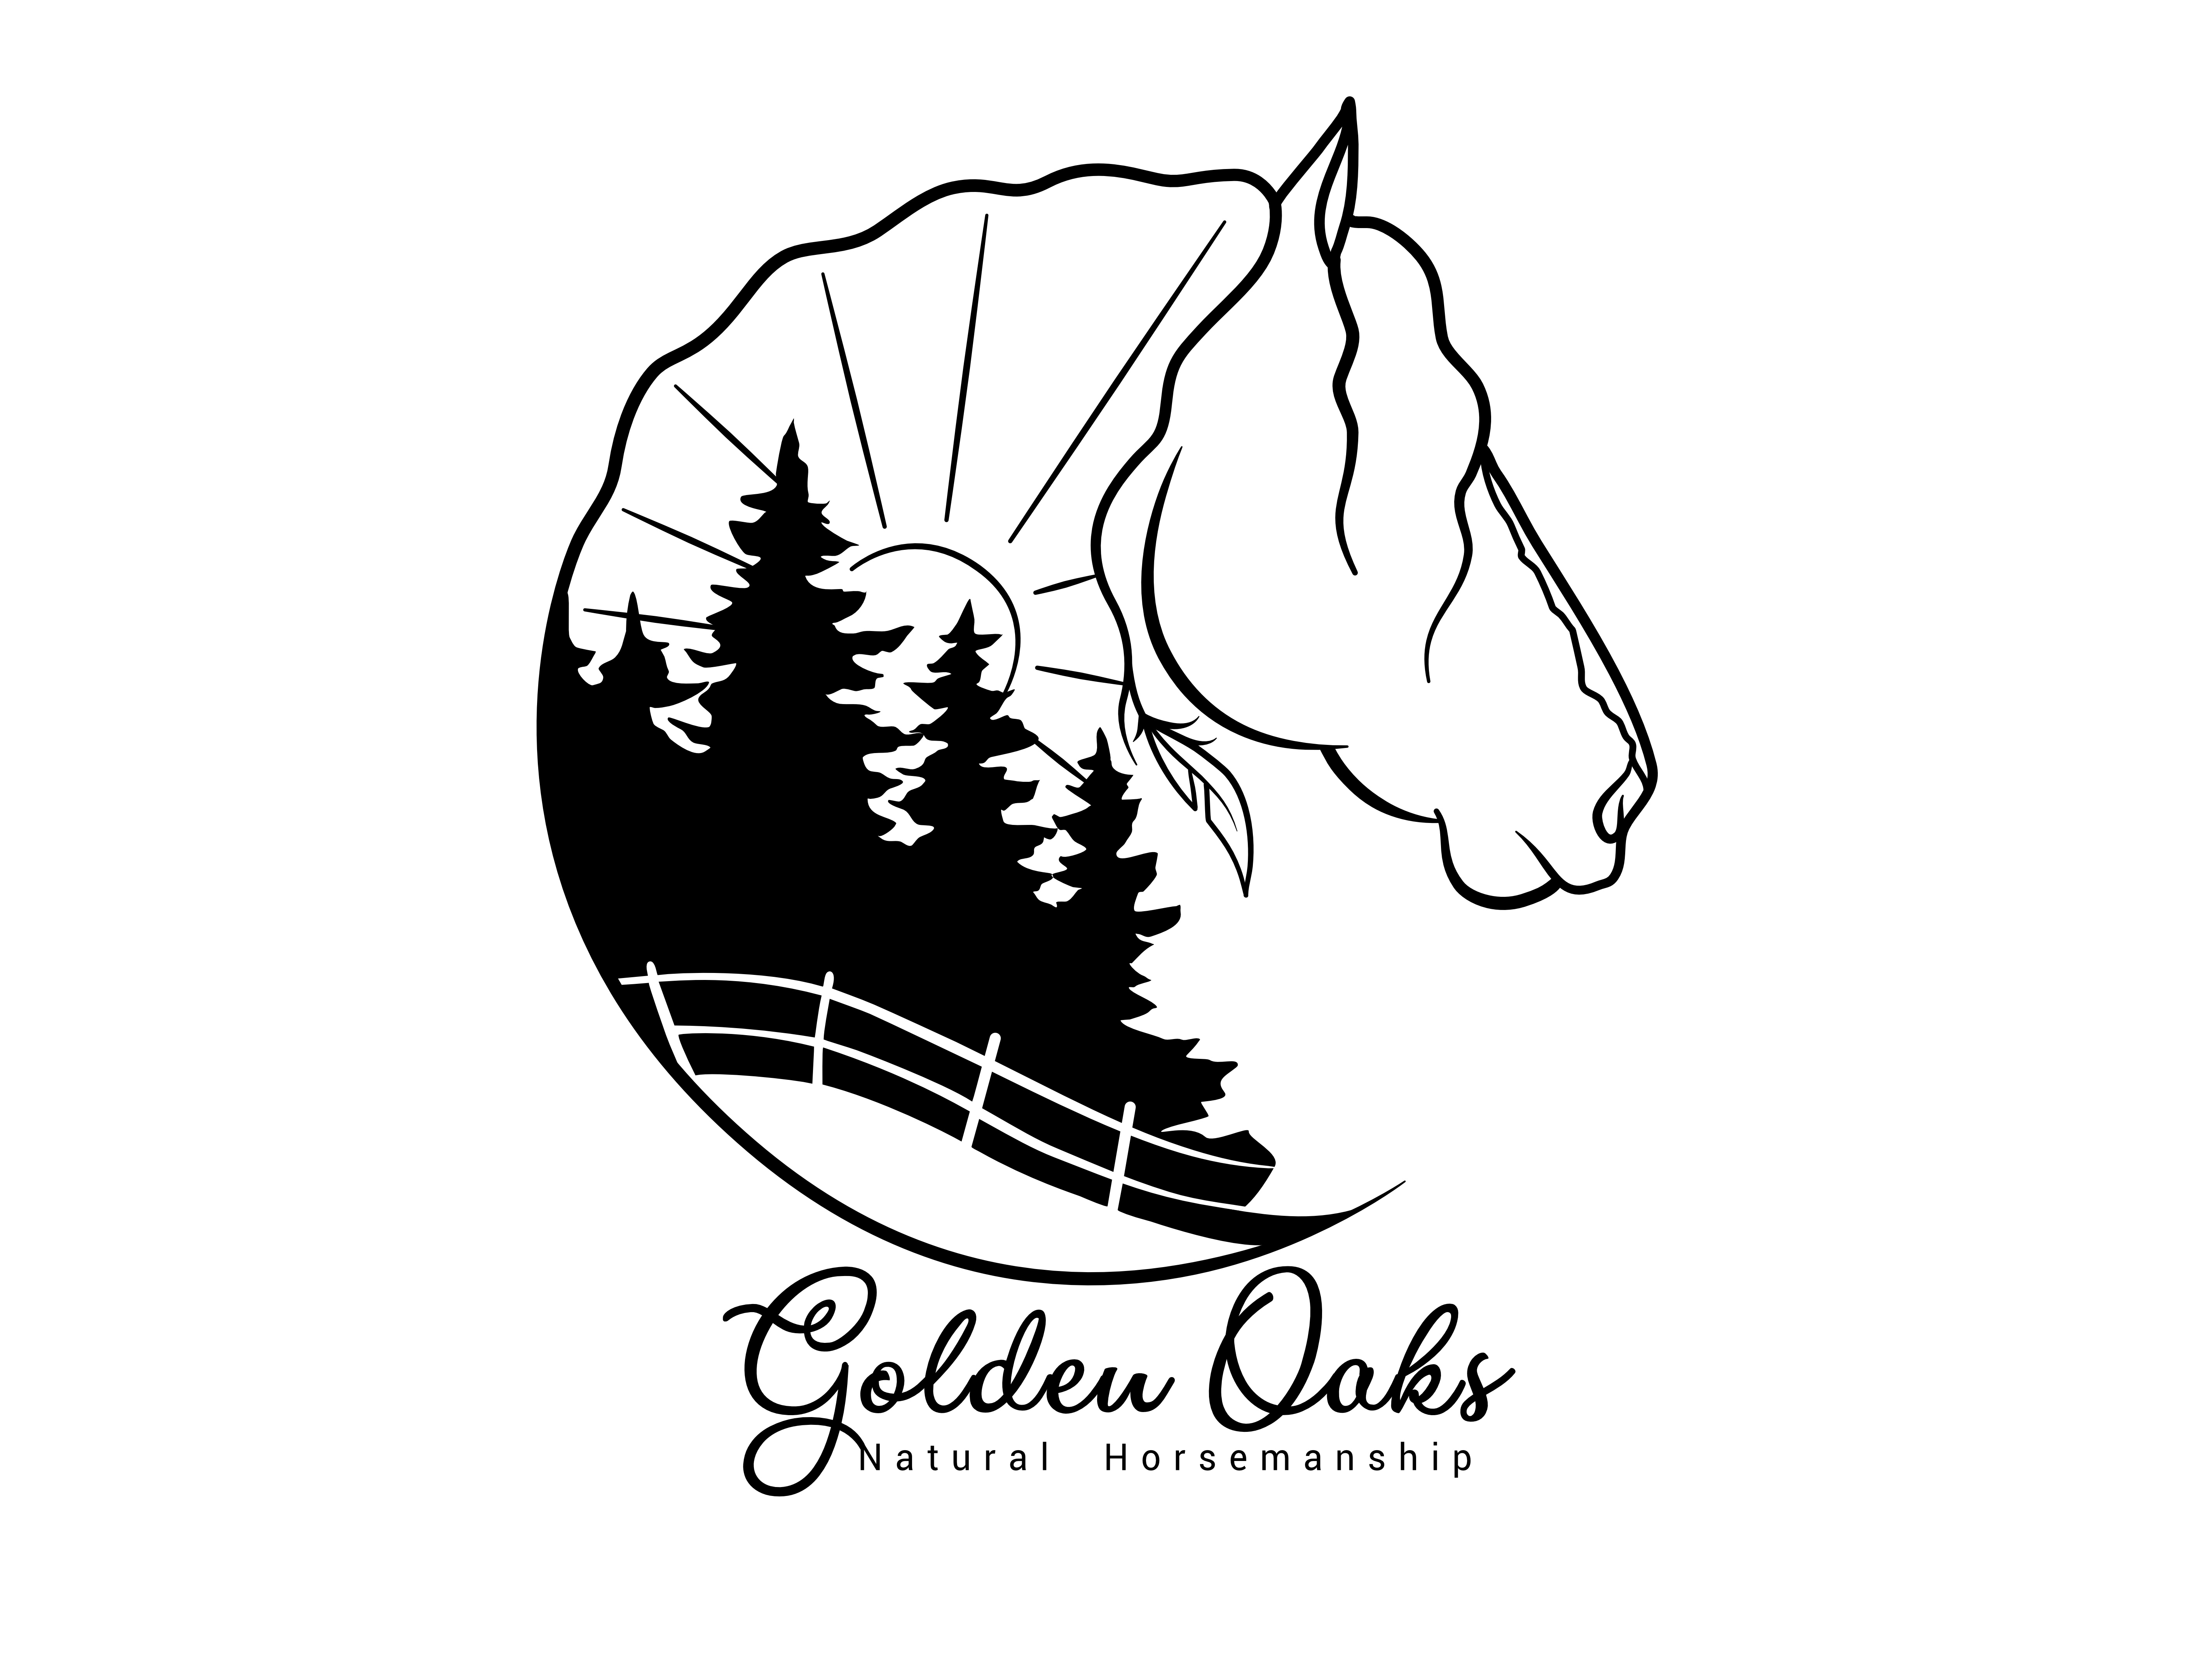 Golden Oaks Natural Horsemanship